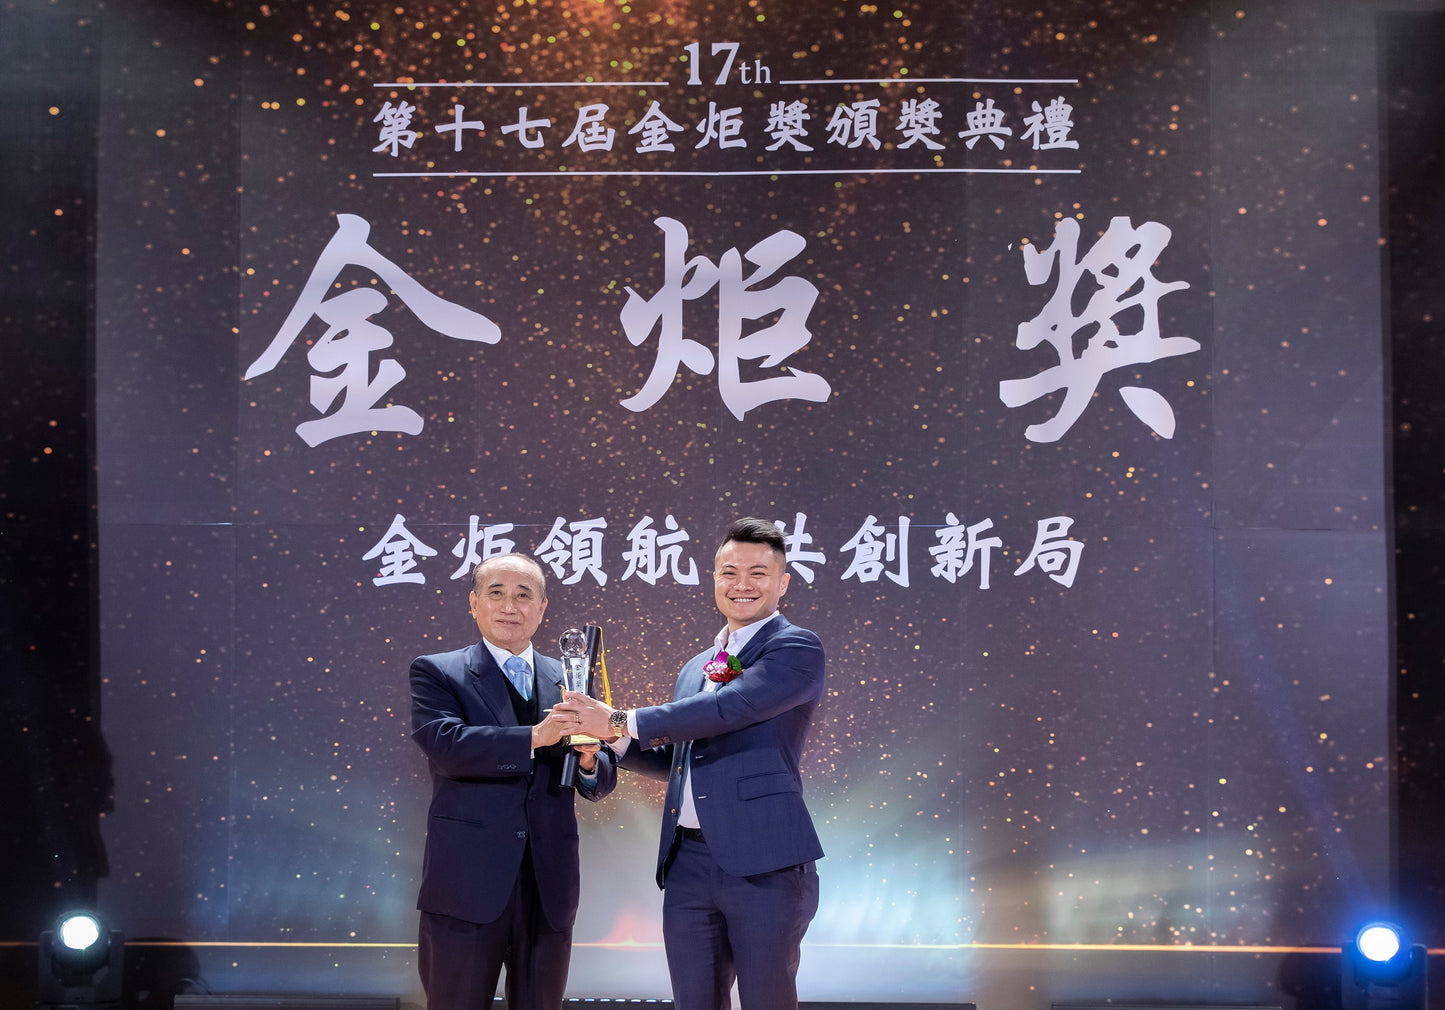 Han Yale wins Taiwan's 17th Golden Torch Award